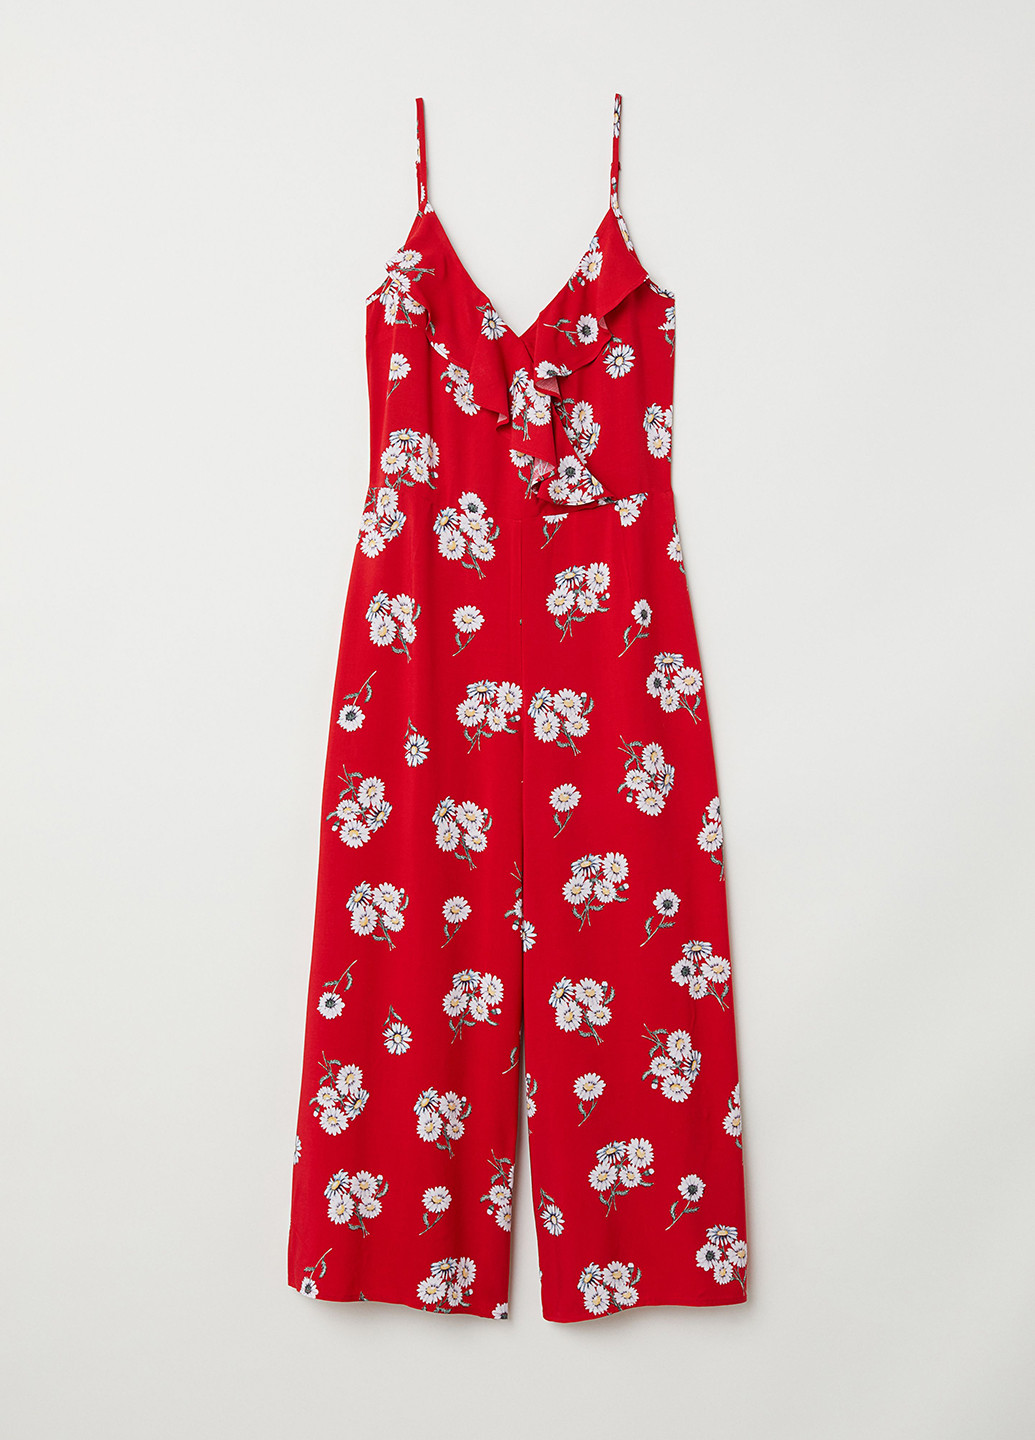 Комбинезон H&M комбинезон-брюки цветочный красный кэжуал вискоза